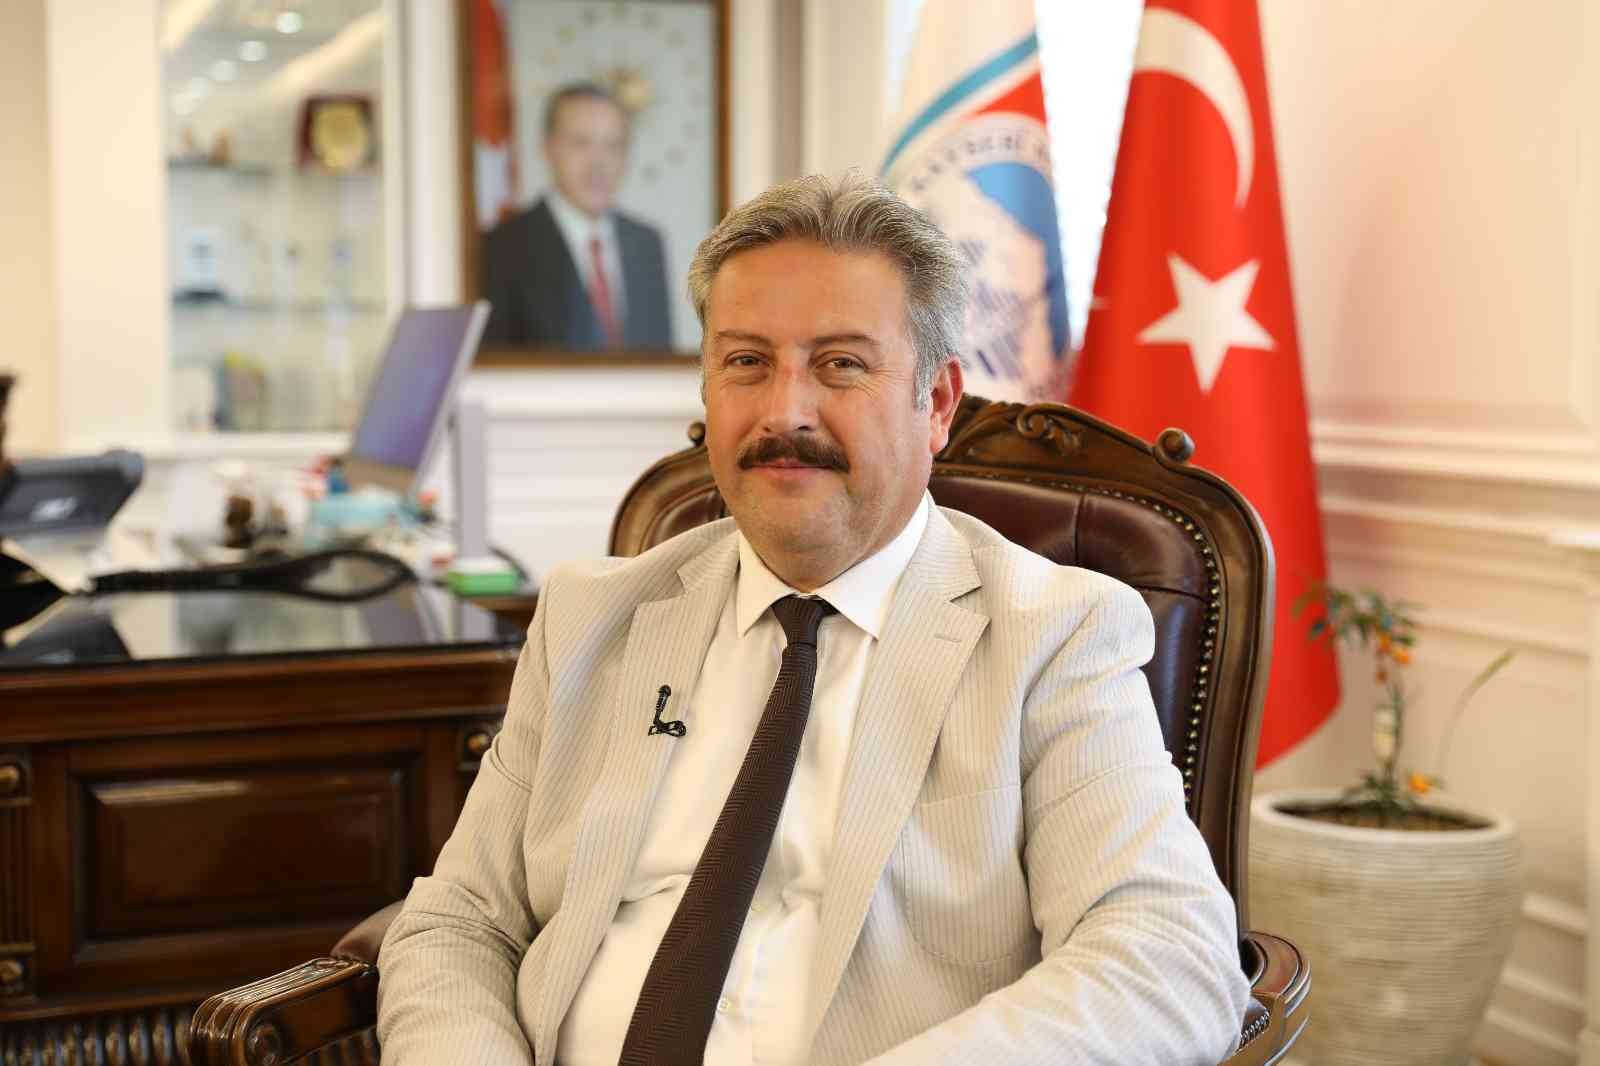 Başkan Palancıoğlu: “Öğretmenler başımızın tacı” #kayseri